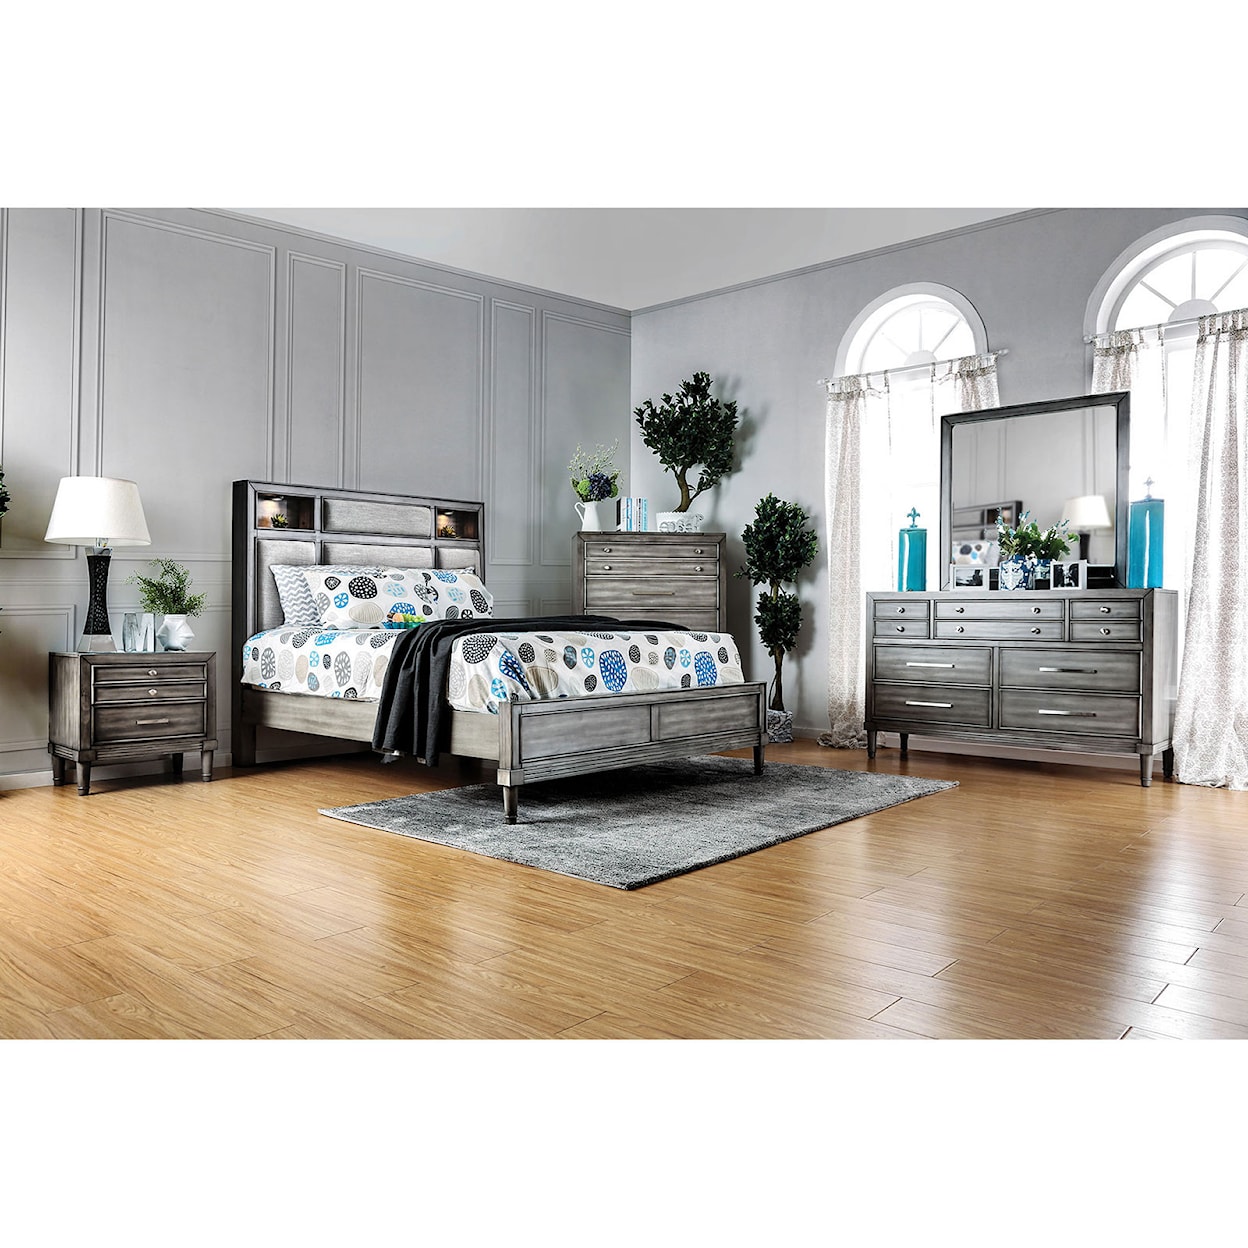 Furniture of America Daphne 5-Piece Queen Bedroom Set